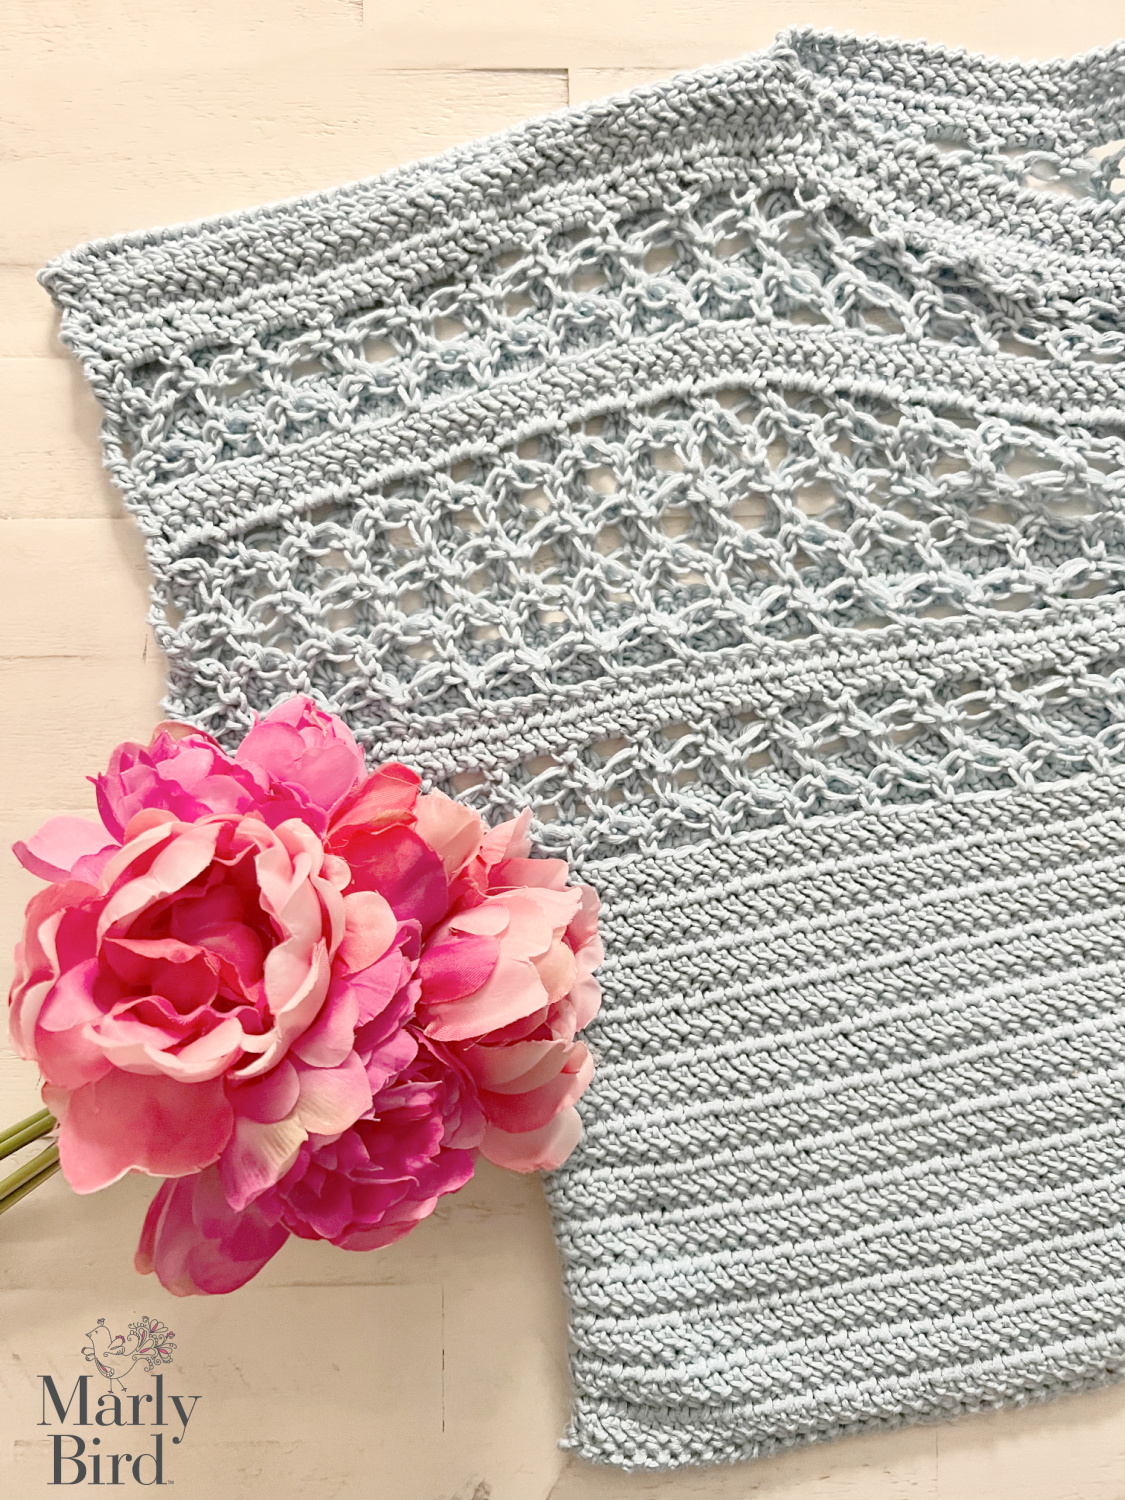 Cotton crochet tee - Solomon's Knot Crochet Tee Pattern - Marly Bird